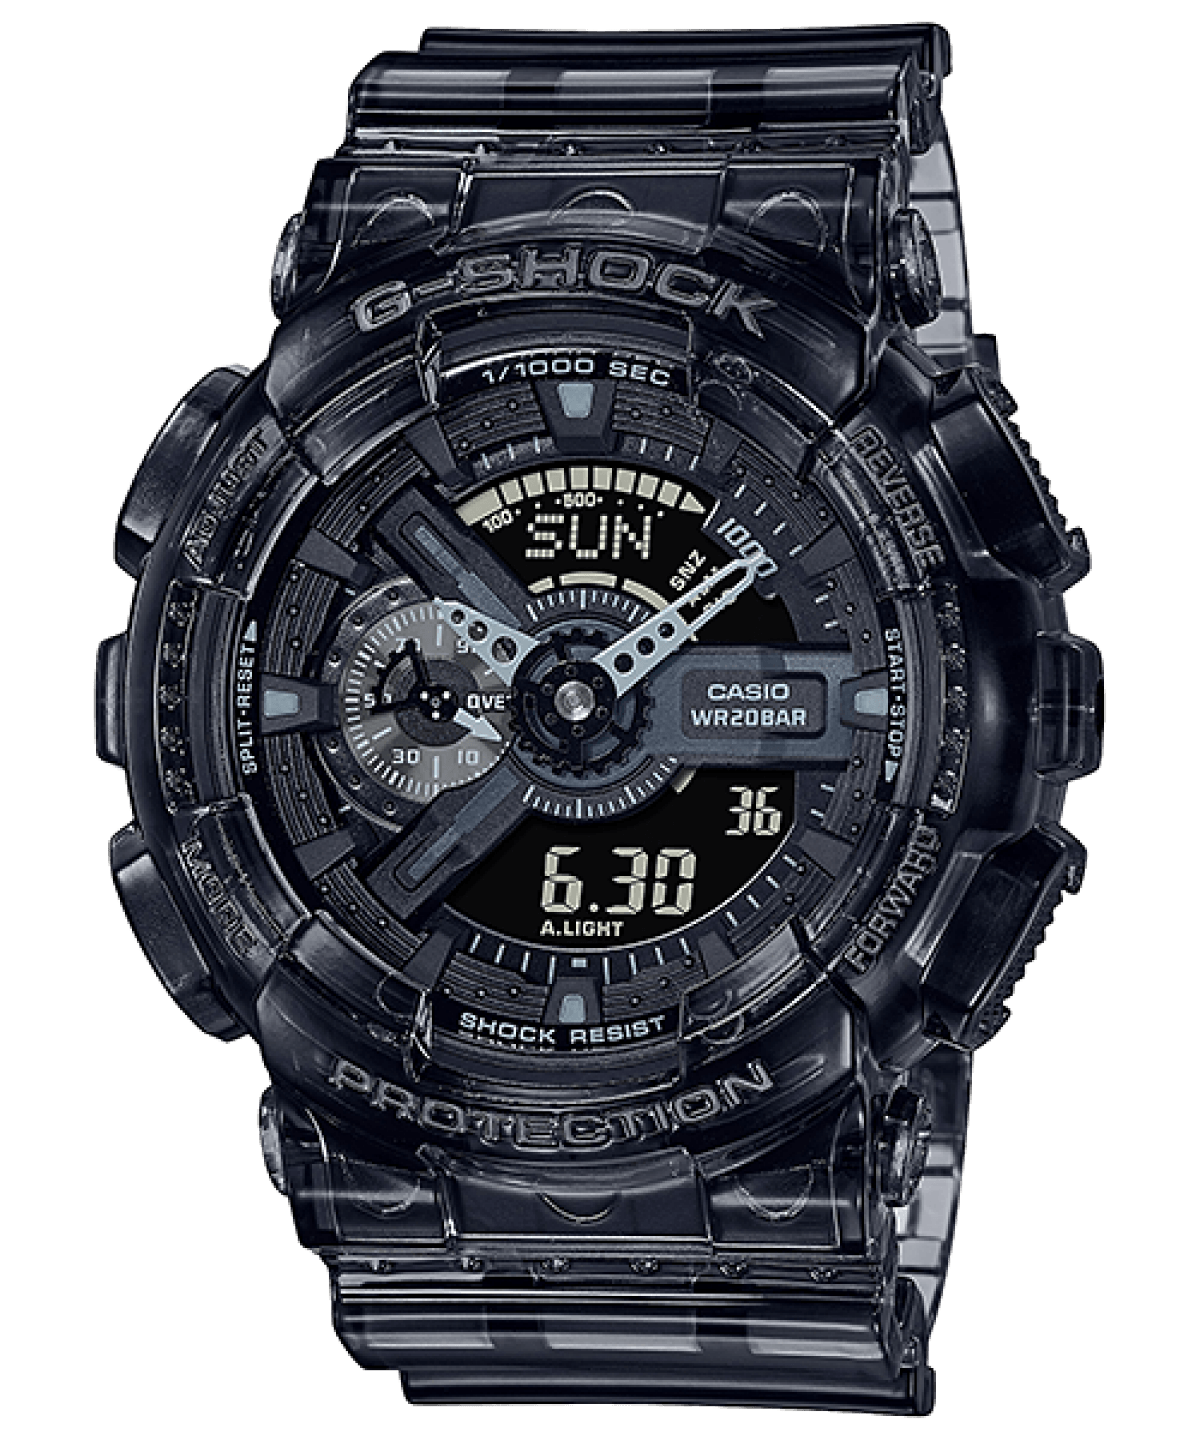 GA-110 Series Watch - Black Resin Strap